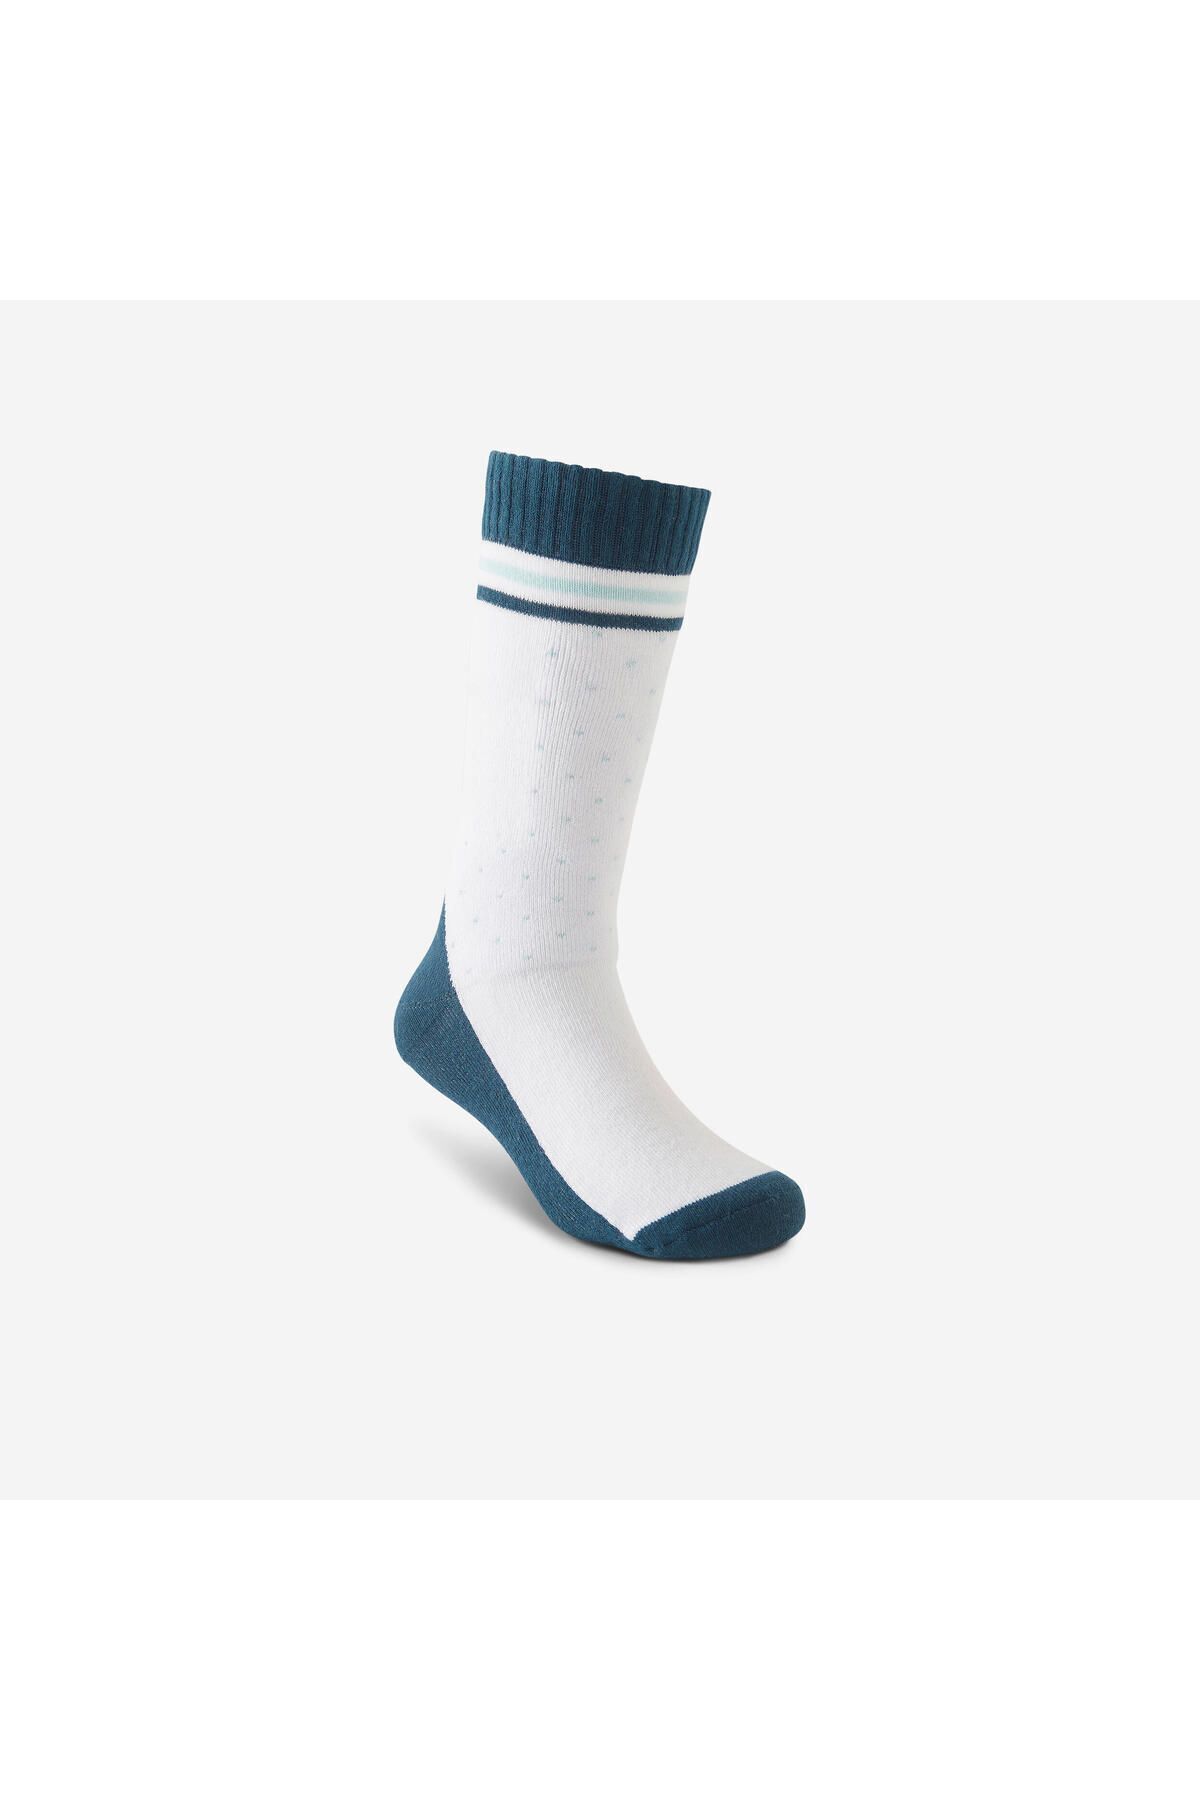 Decathlon Çocuk Paten Çorabı - Mavi 345250